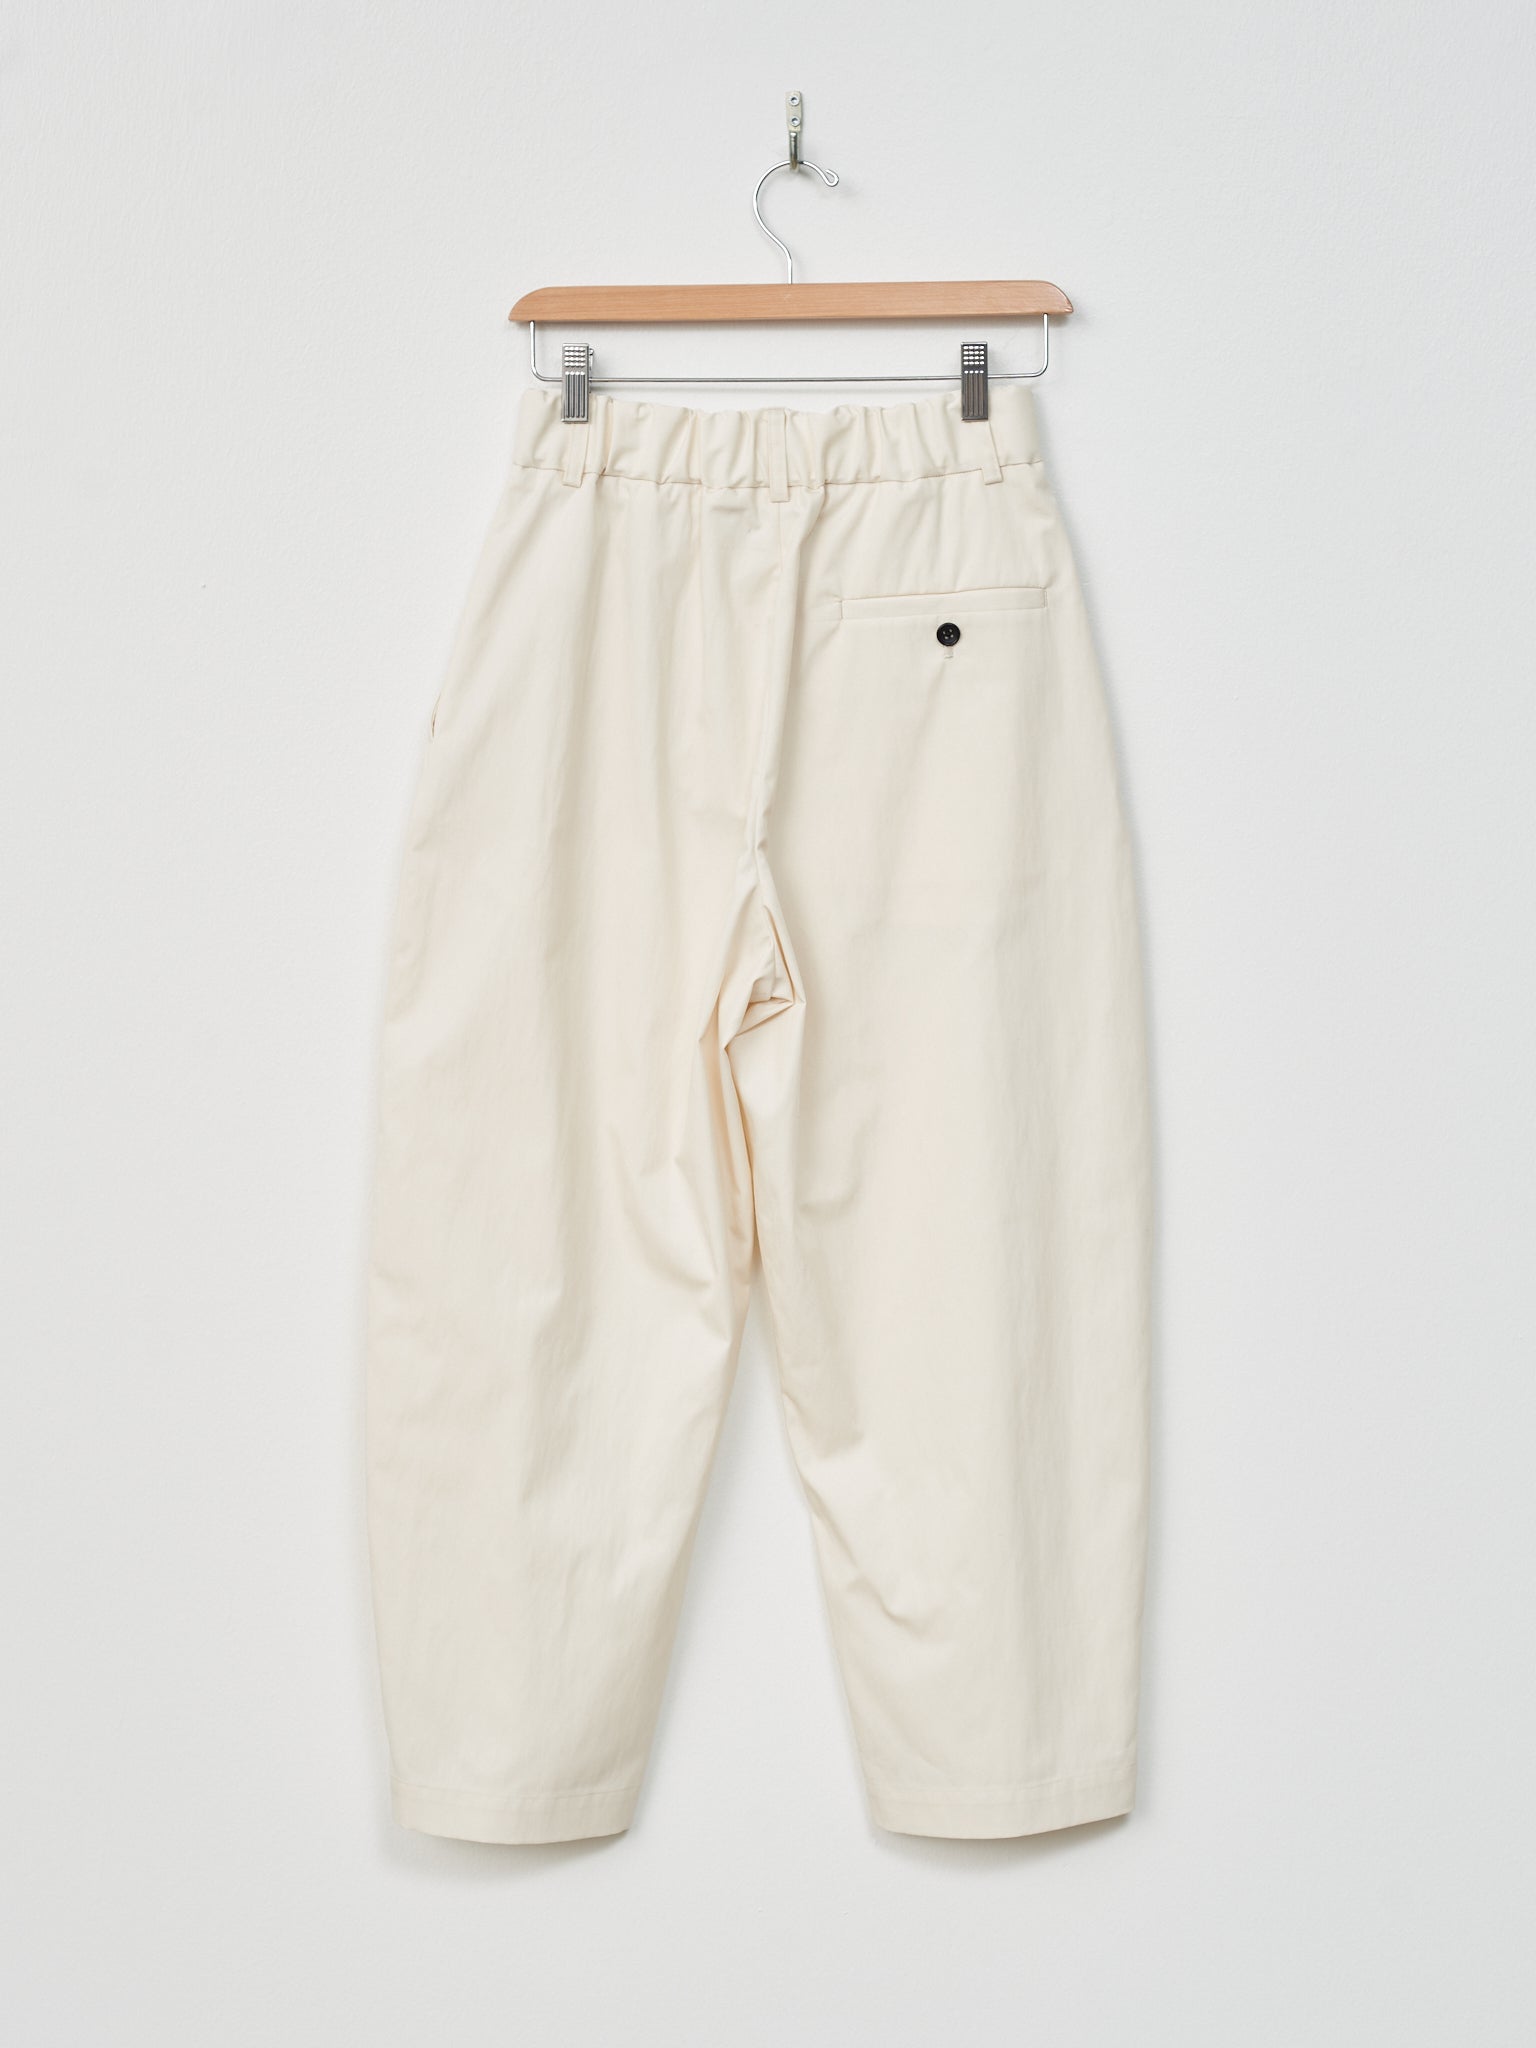 Namu Shop - Nicholson & Nicholson MONT Trouser - Off White